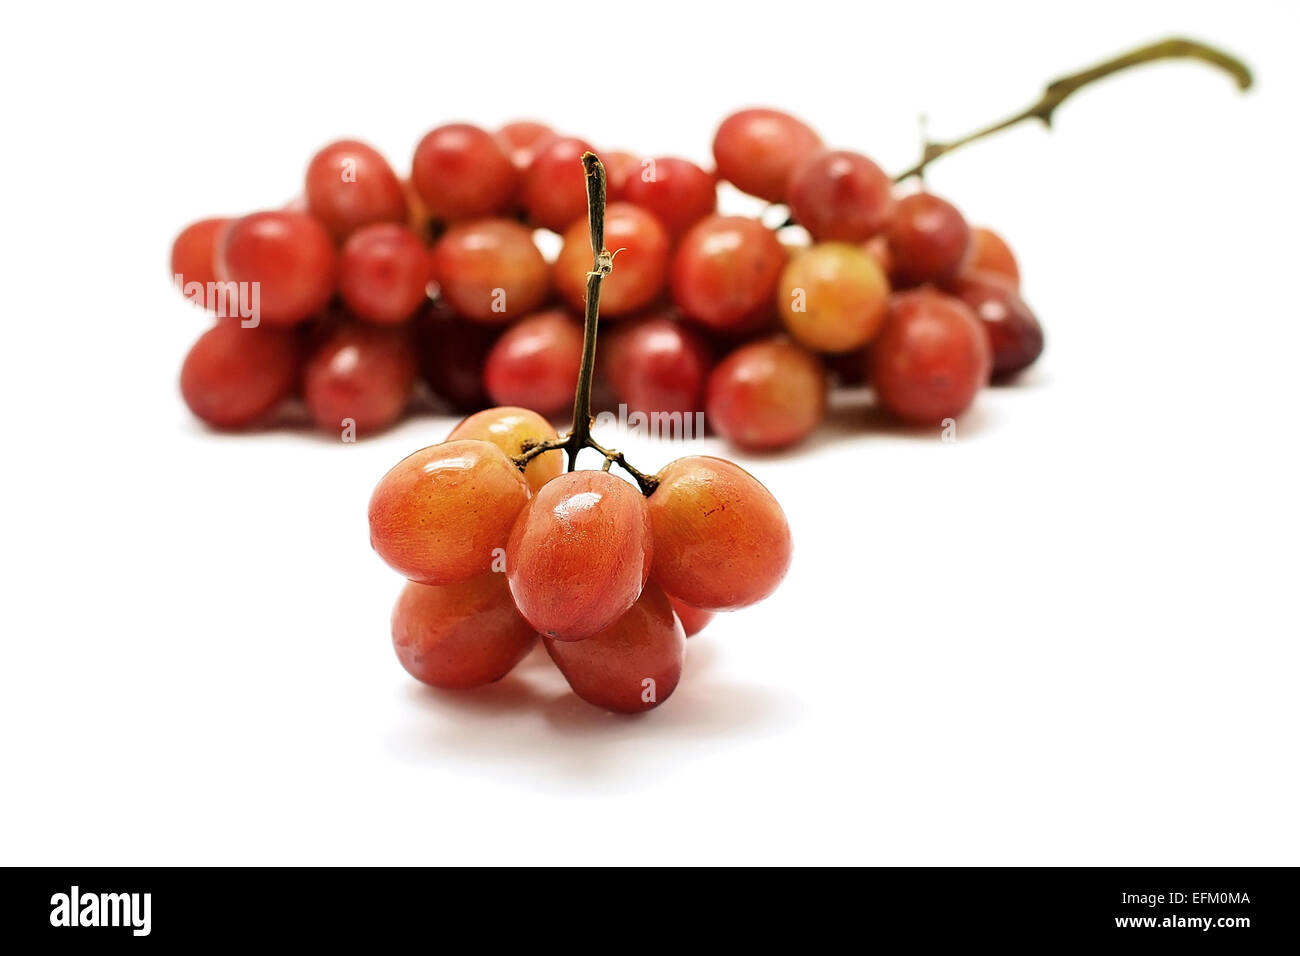 Mosti di uve fresche frutto isolato su sfondo bianco Foto Stock